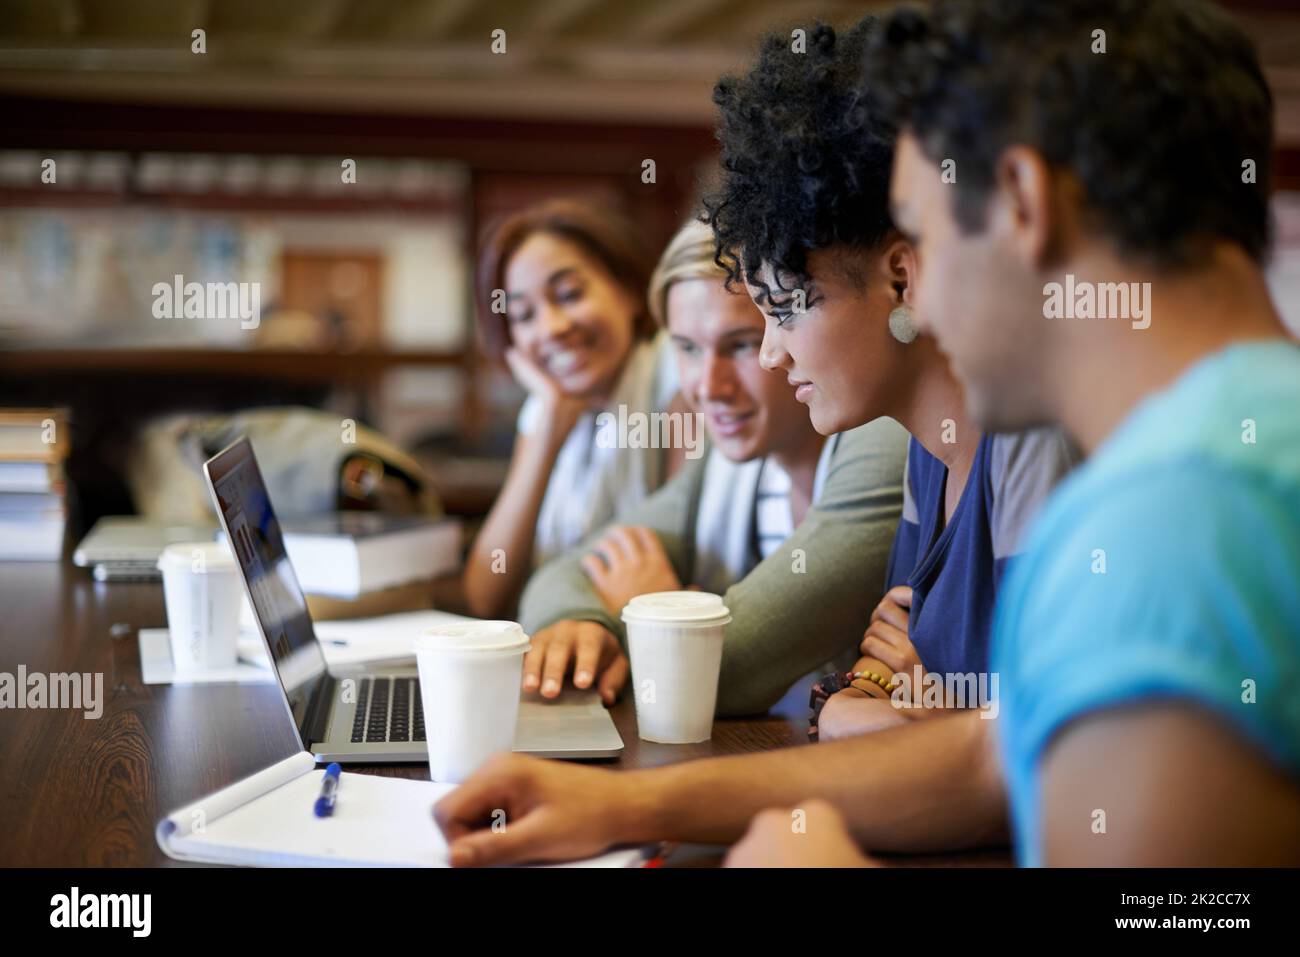 Lavorare insieme per prepararsi alle finali. Un gruppo di giovani che studiano insieme per i prossimi esami. Foto Stock